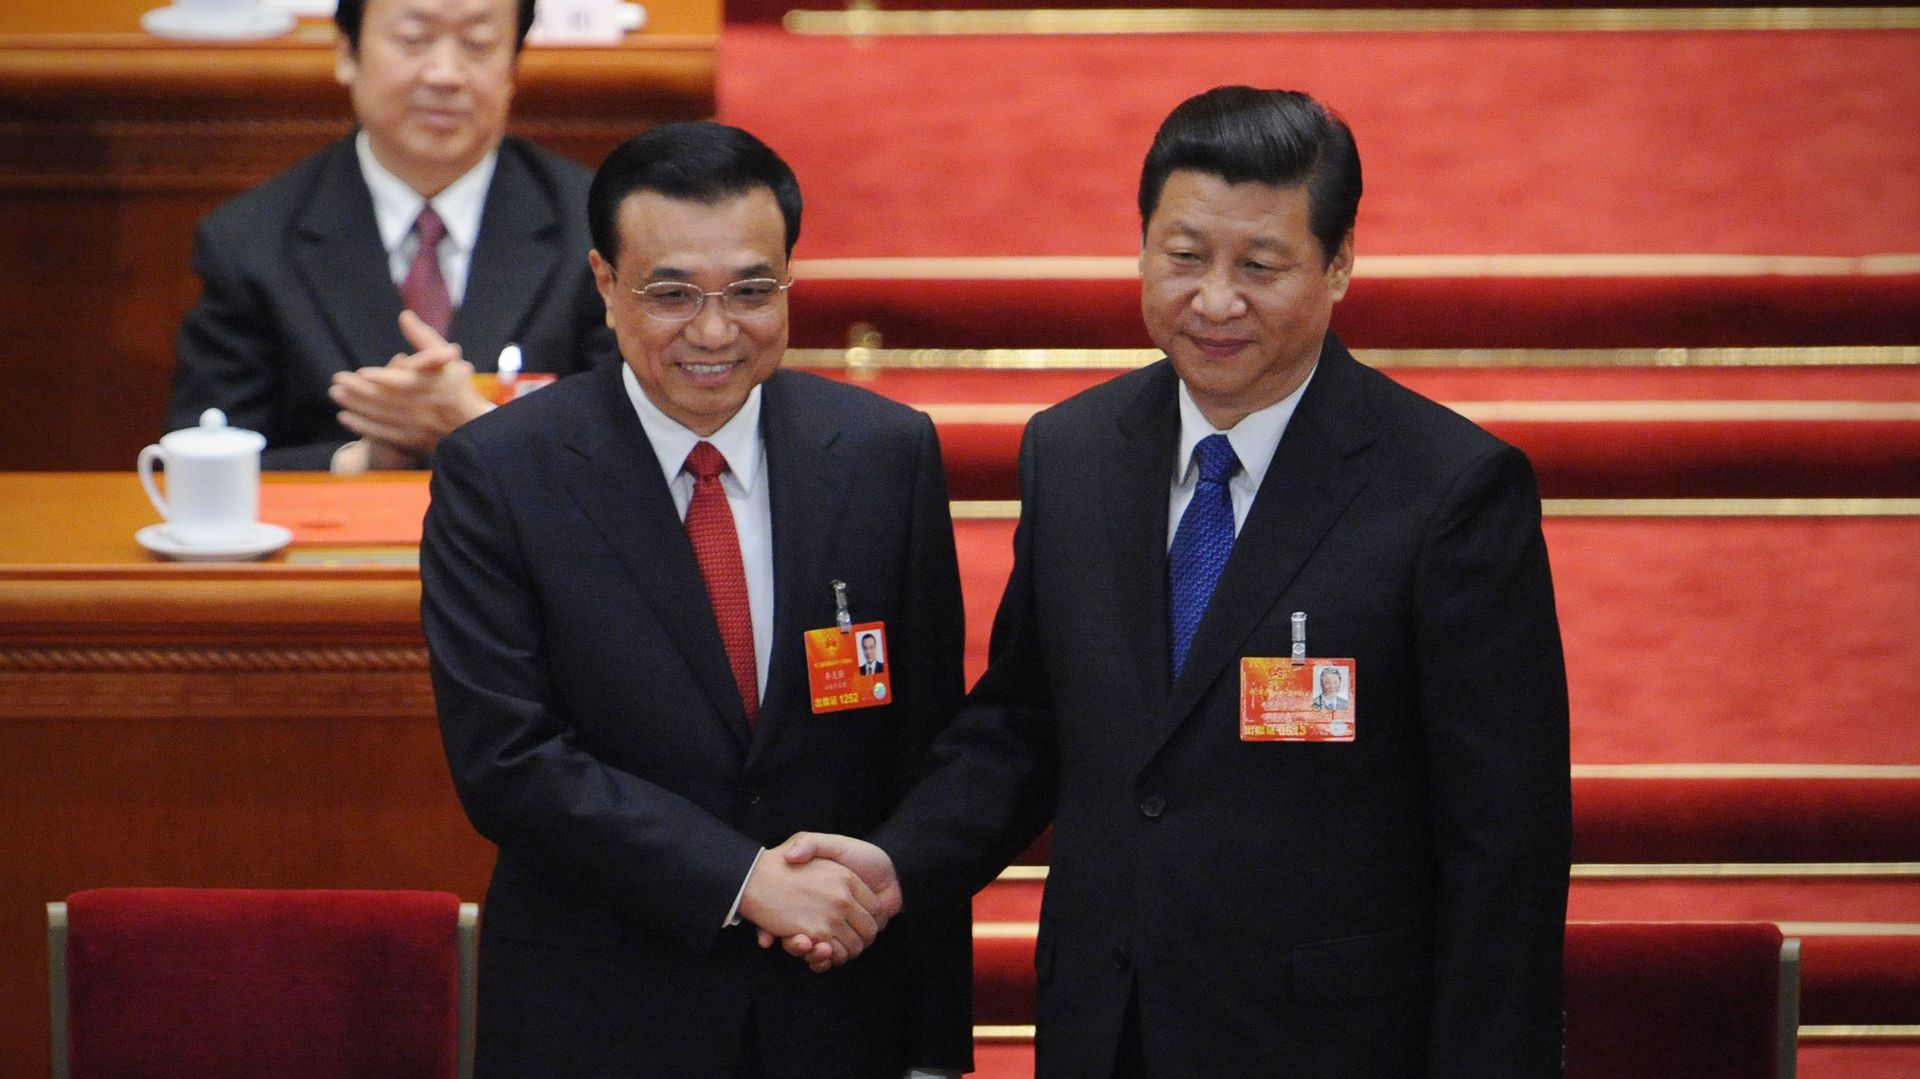 Le nouveau Premier ministre chinois Li Kequiang aux côtés du président Xi Jinping